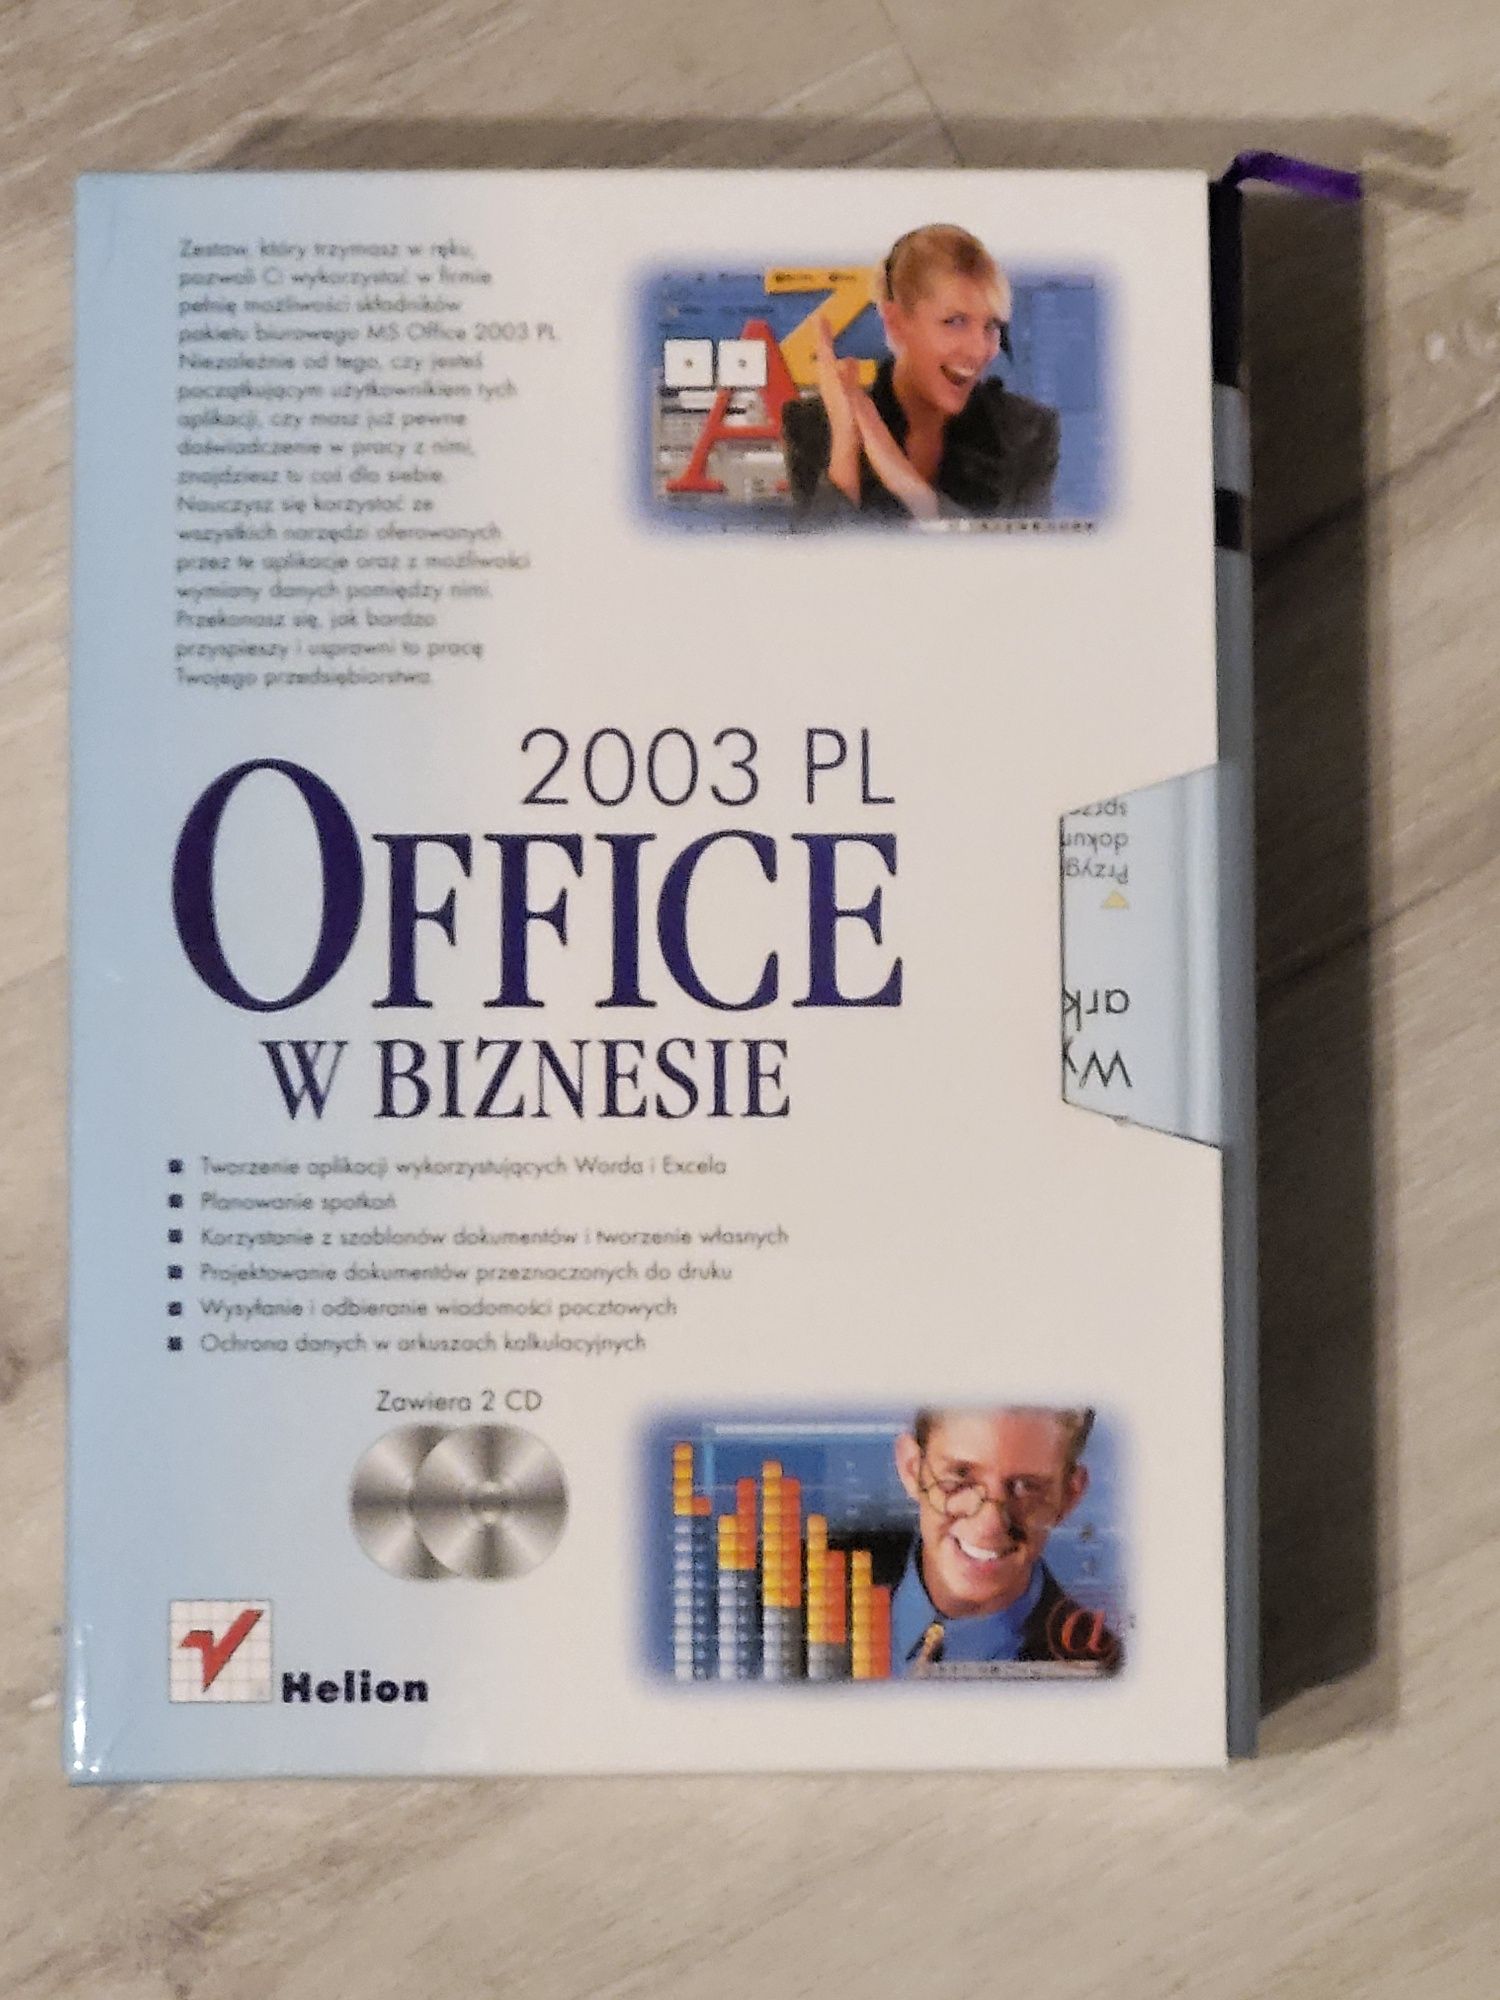 Ms office 2003 PL w biznesie tom I i II